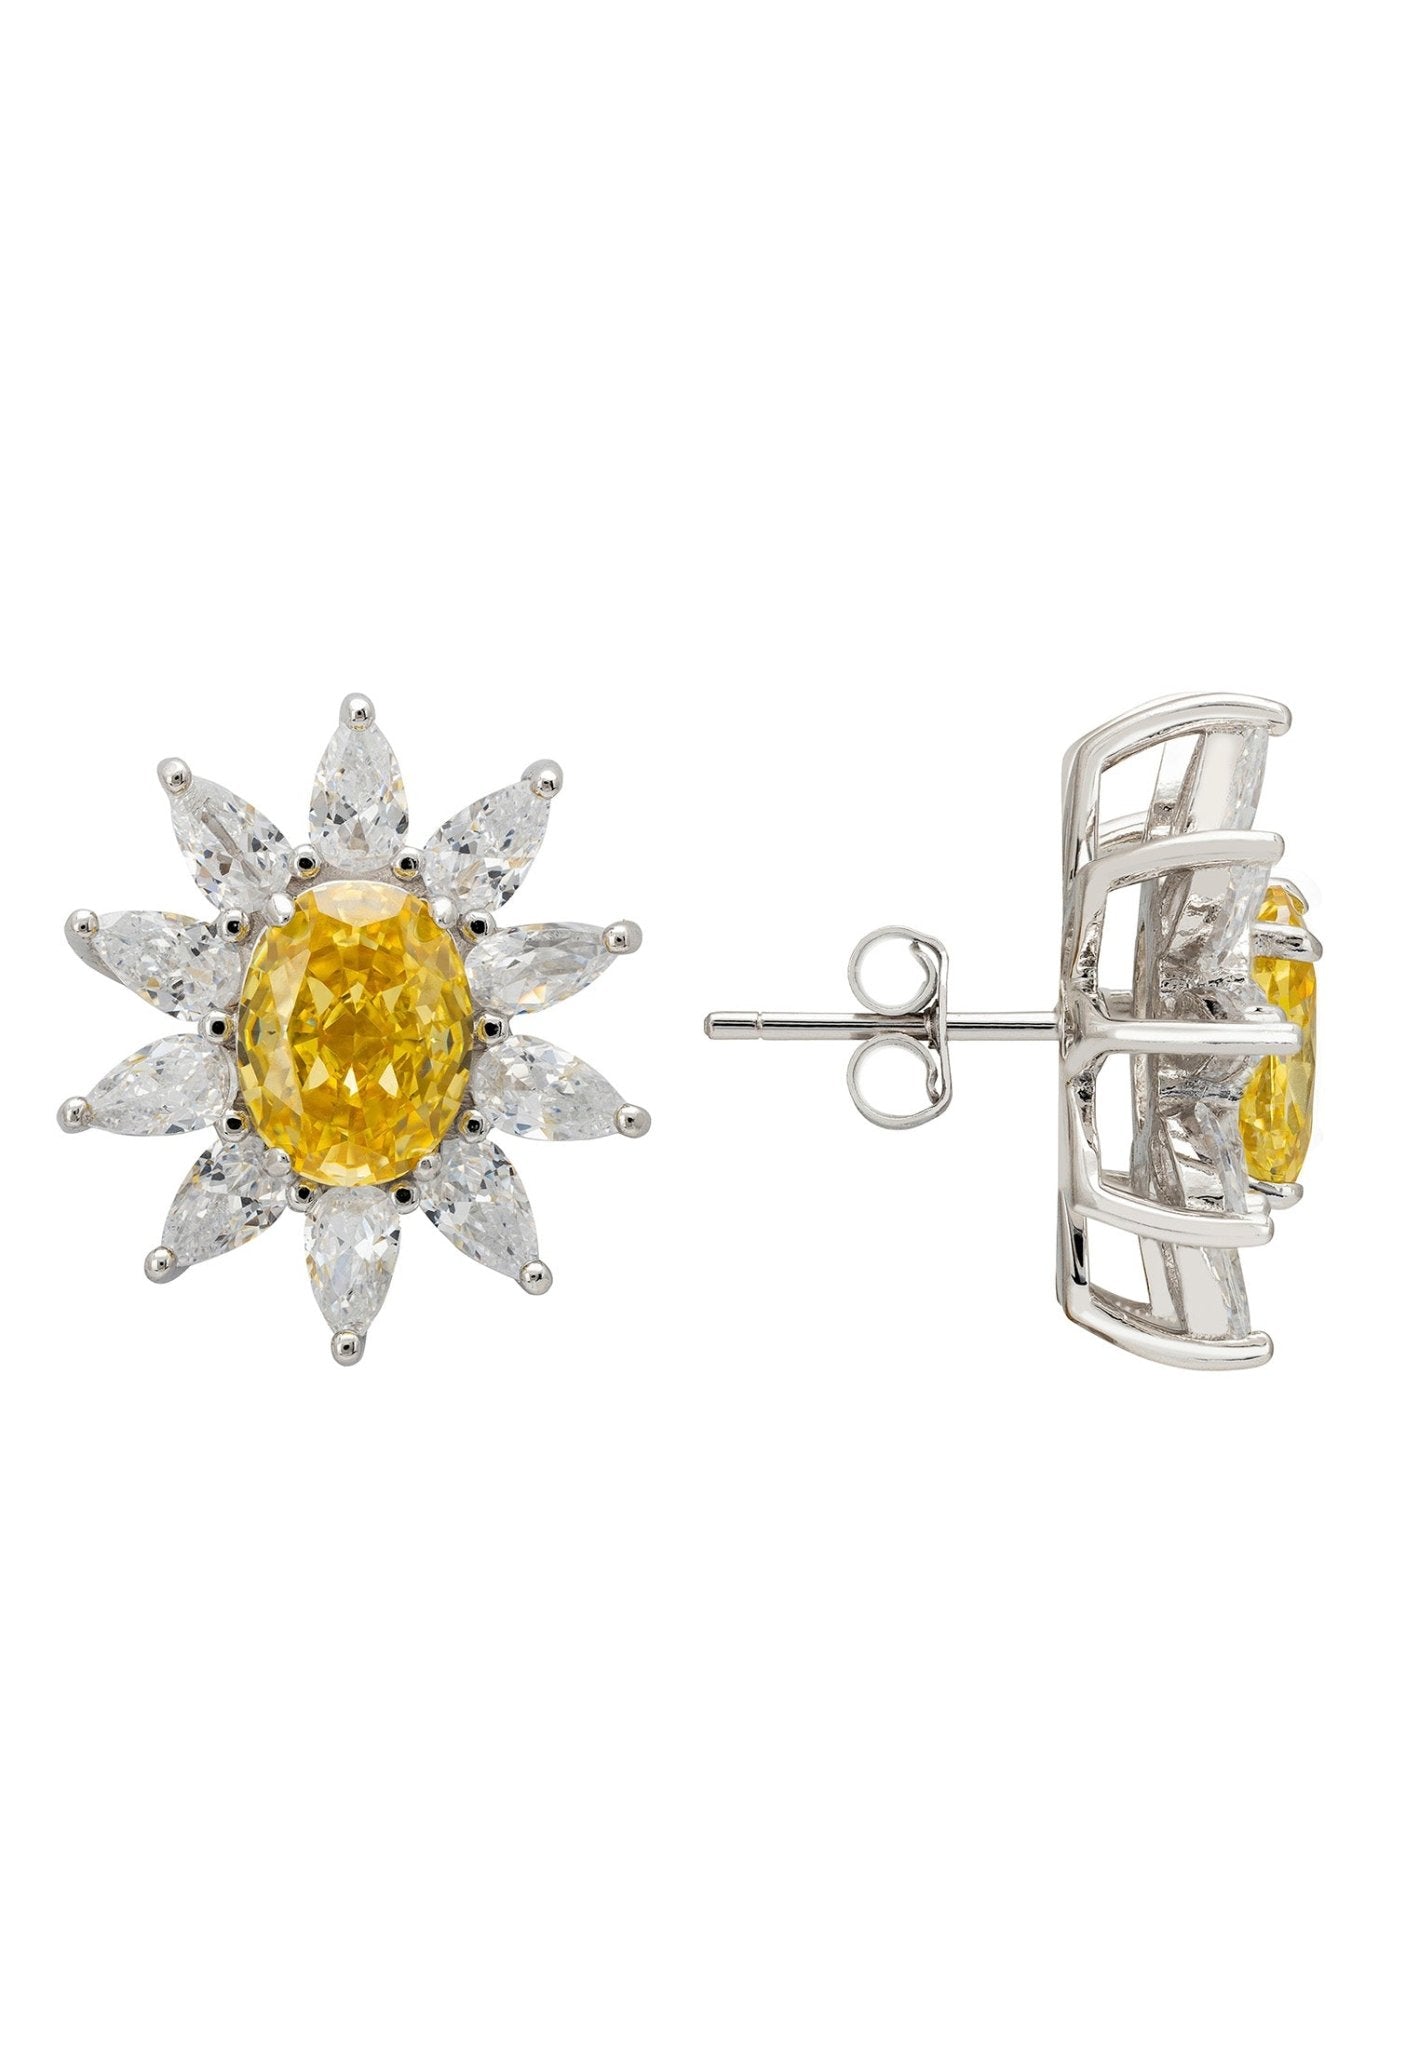 Daisy Gemstone Stud Earrings Yellow Topaz Silver - LATELITA Earrings